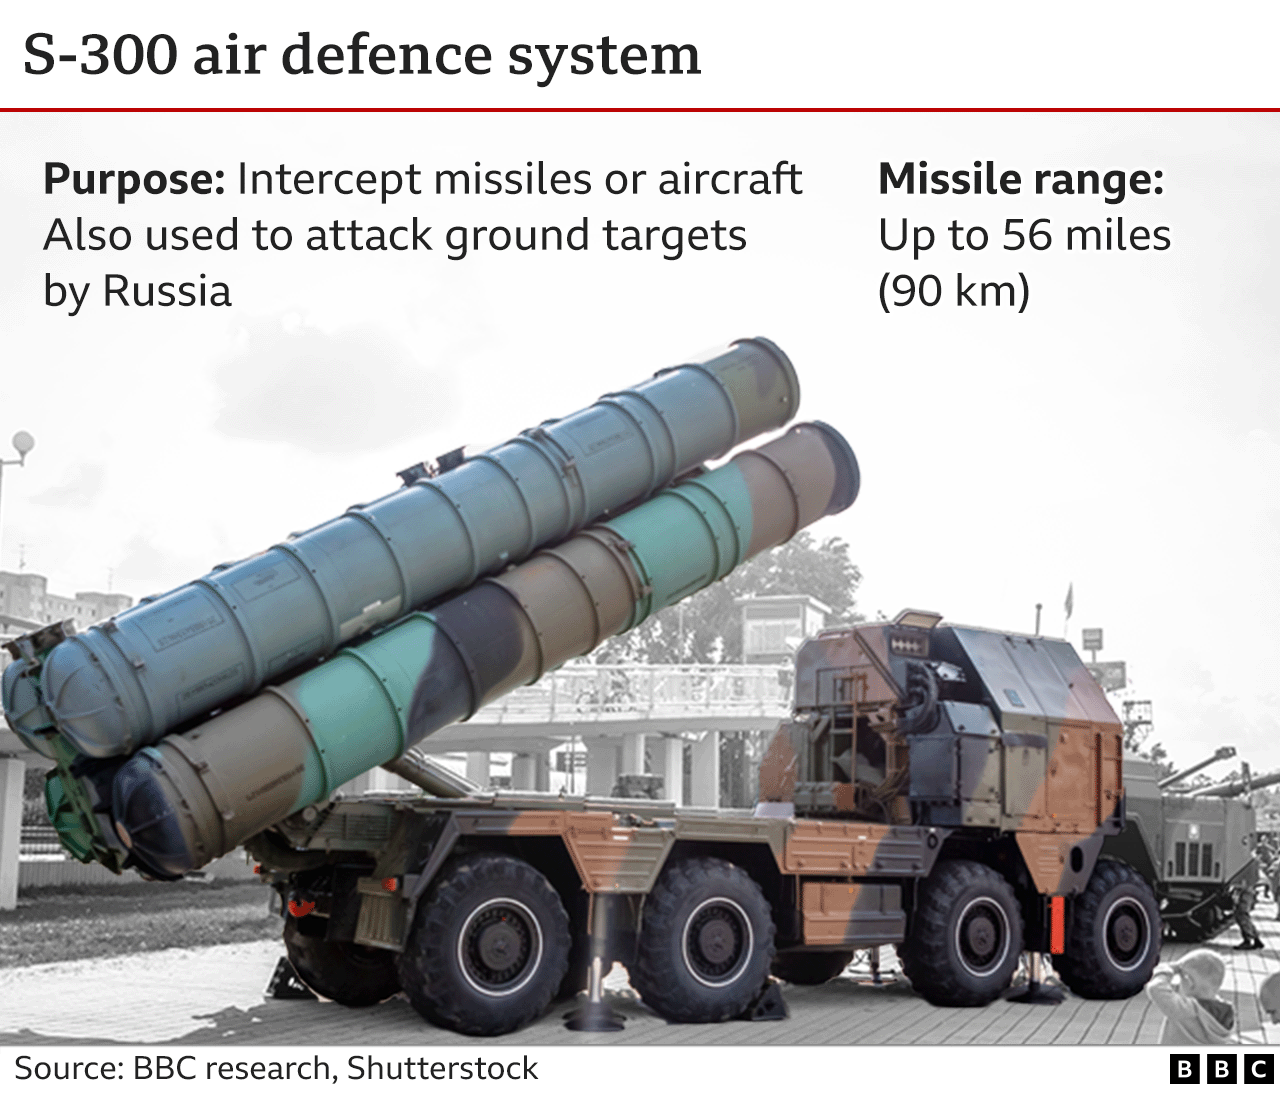 Grafik menunjukkan kendaraan peluncuran sistem pertahanan udara S-300 dan menjelaskan bahwa kendaraan ini memiliki jangkauan 56 mil (90 km) dan terutama digunakan untuk mencegat rudal atau pesawat, tetapi juga digunakan oleh Rusia untuk menyerang target darat.